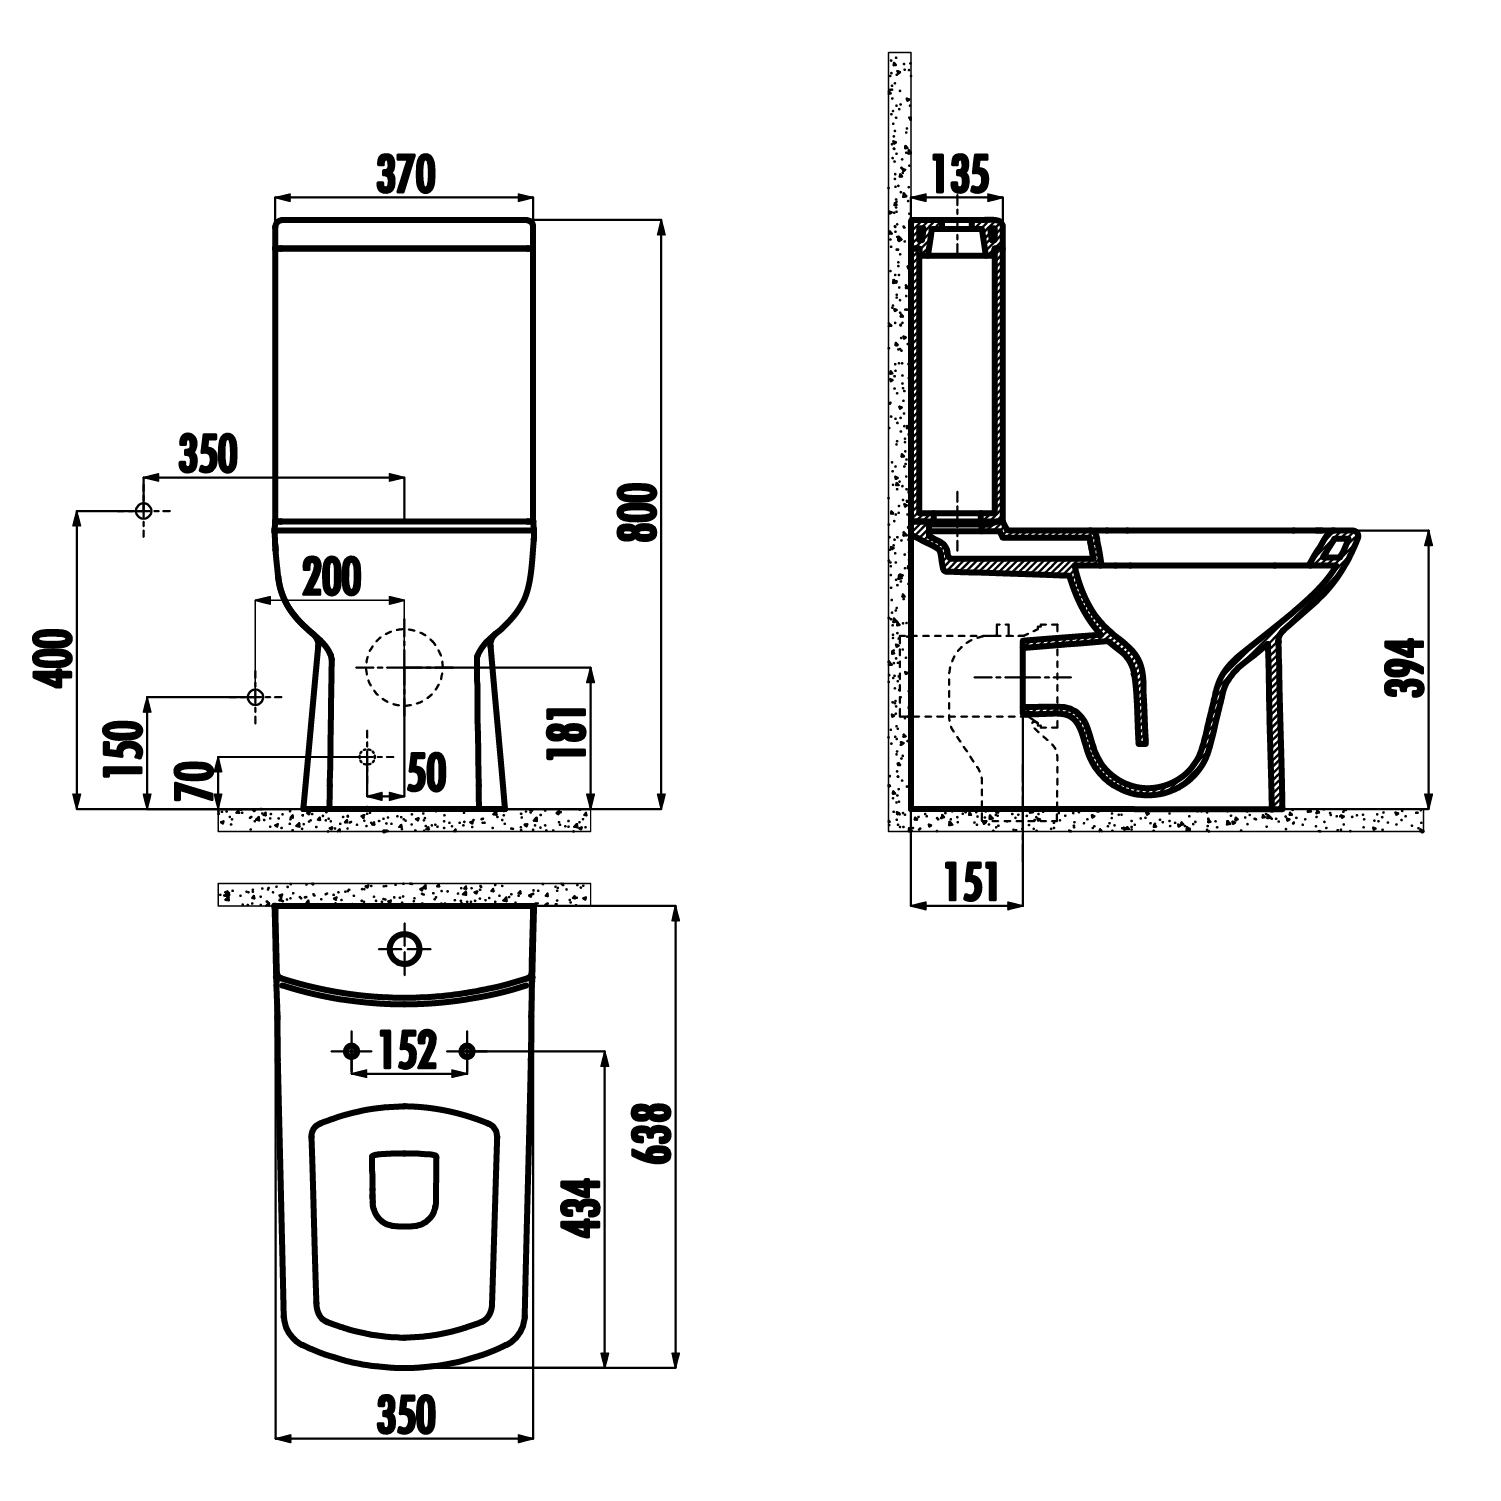 LARA Kombi-WC, Abgang senkrecht/waagerecht, Spülgarnitur, schwarz matt